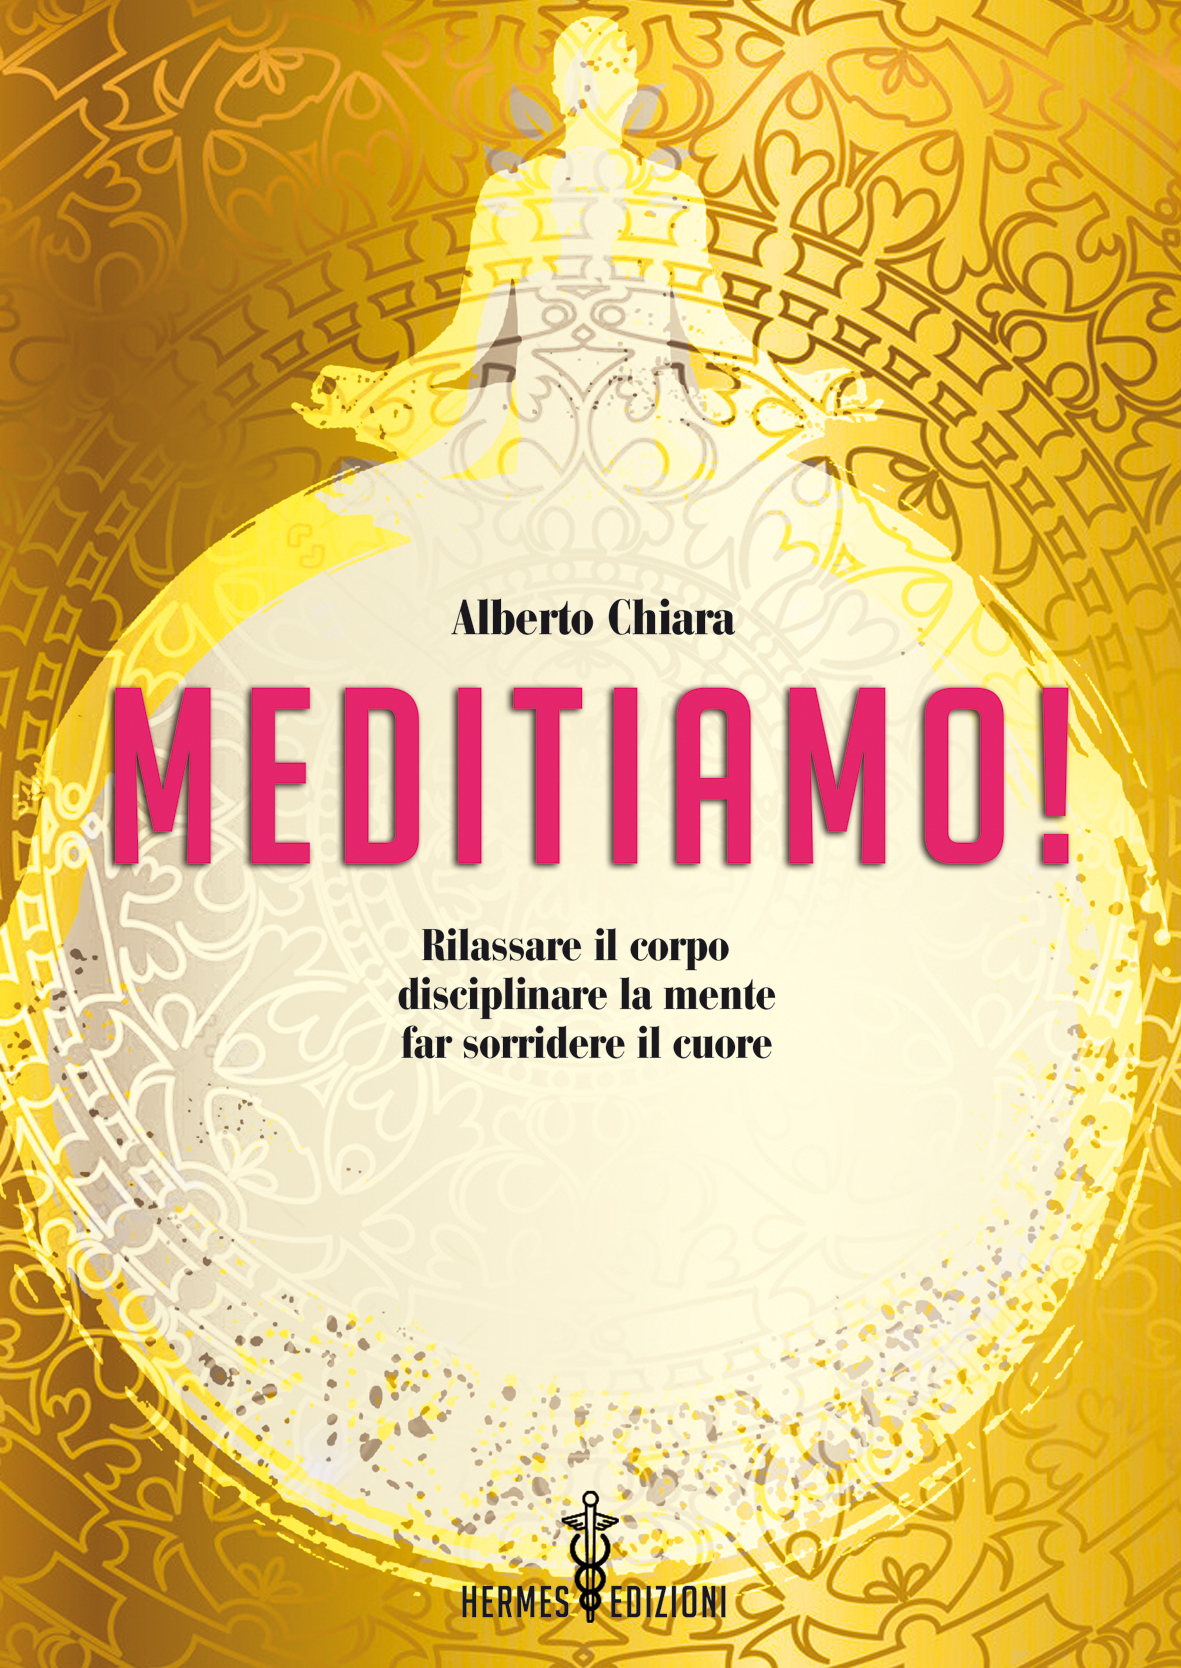 Libri Alberto Chiara - Meditiamo. Liberiamoci Dallo Stress NUOVO SIGILLATO, EDIZIONE DEL 11/03/2021 SUBITO DISPONIBILE